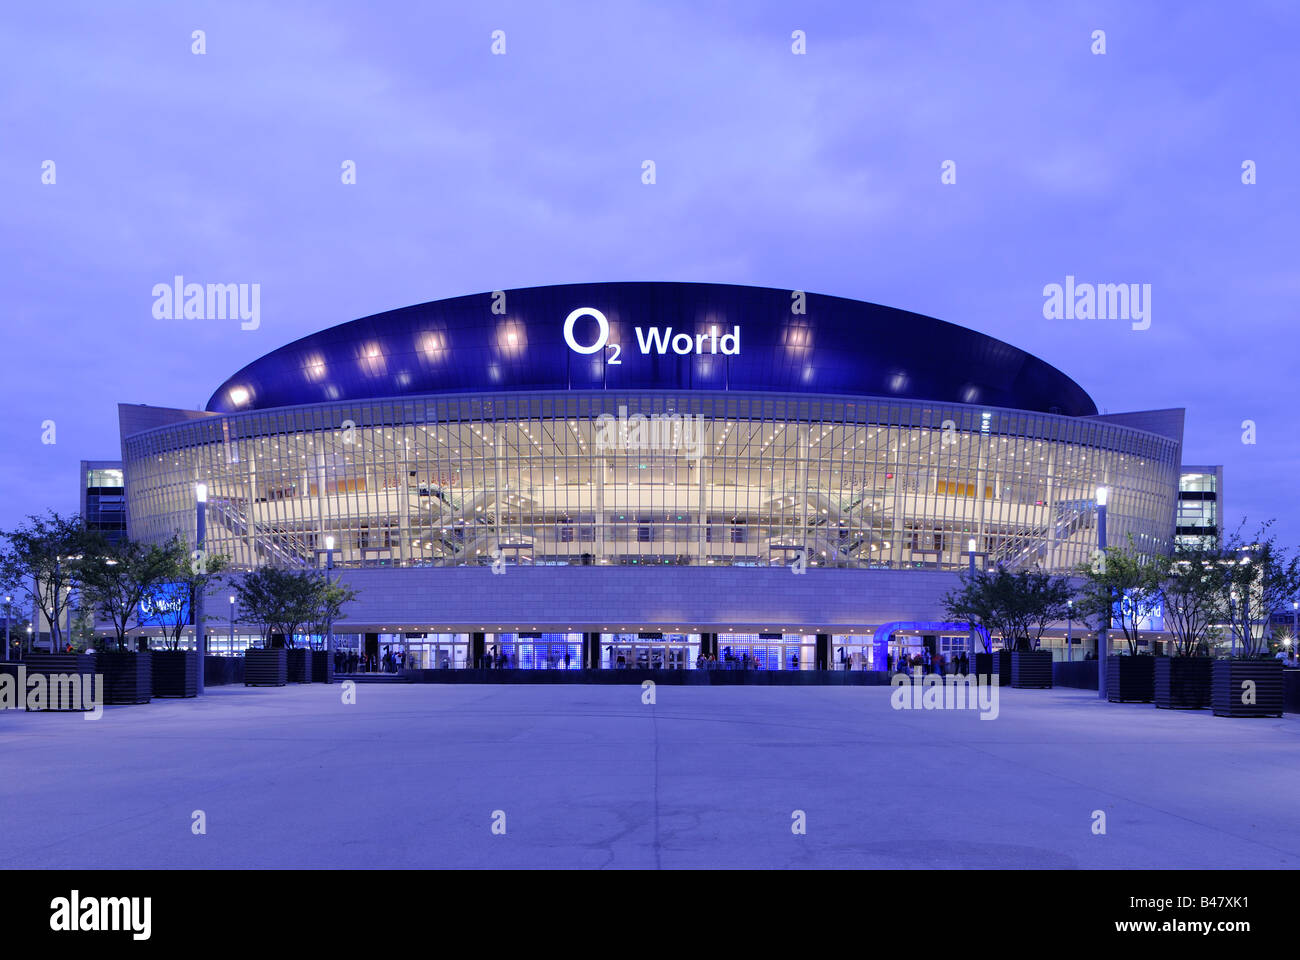 O2 World, O2-Arena von der Anschutz Entertainment Group, Berlin Friedrichshain, Deutschland, Europa. Stockfoto